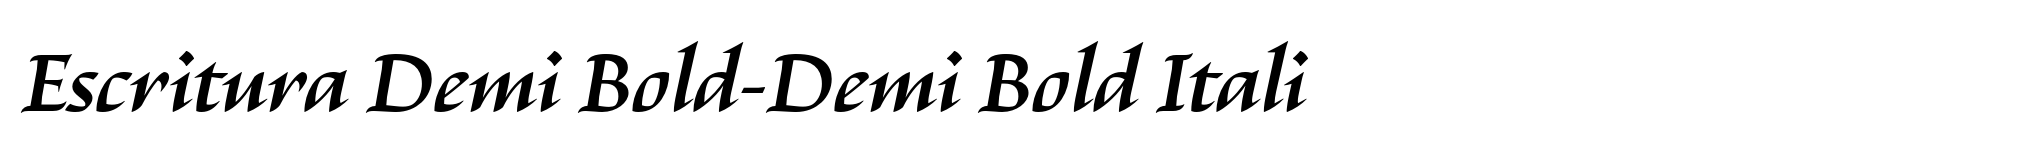 Escritura Demi Bold-Demi Bold Itali image